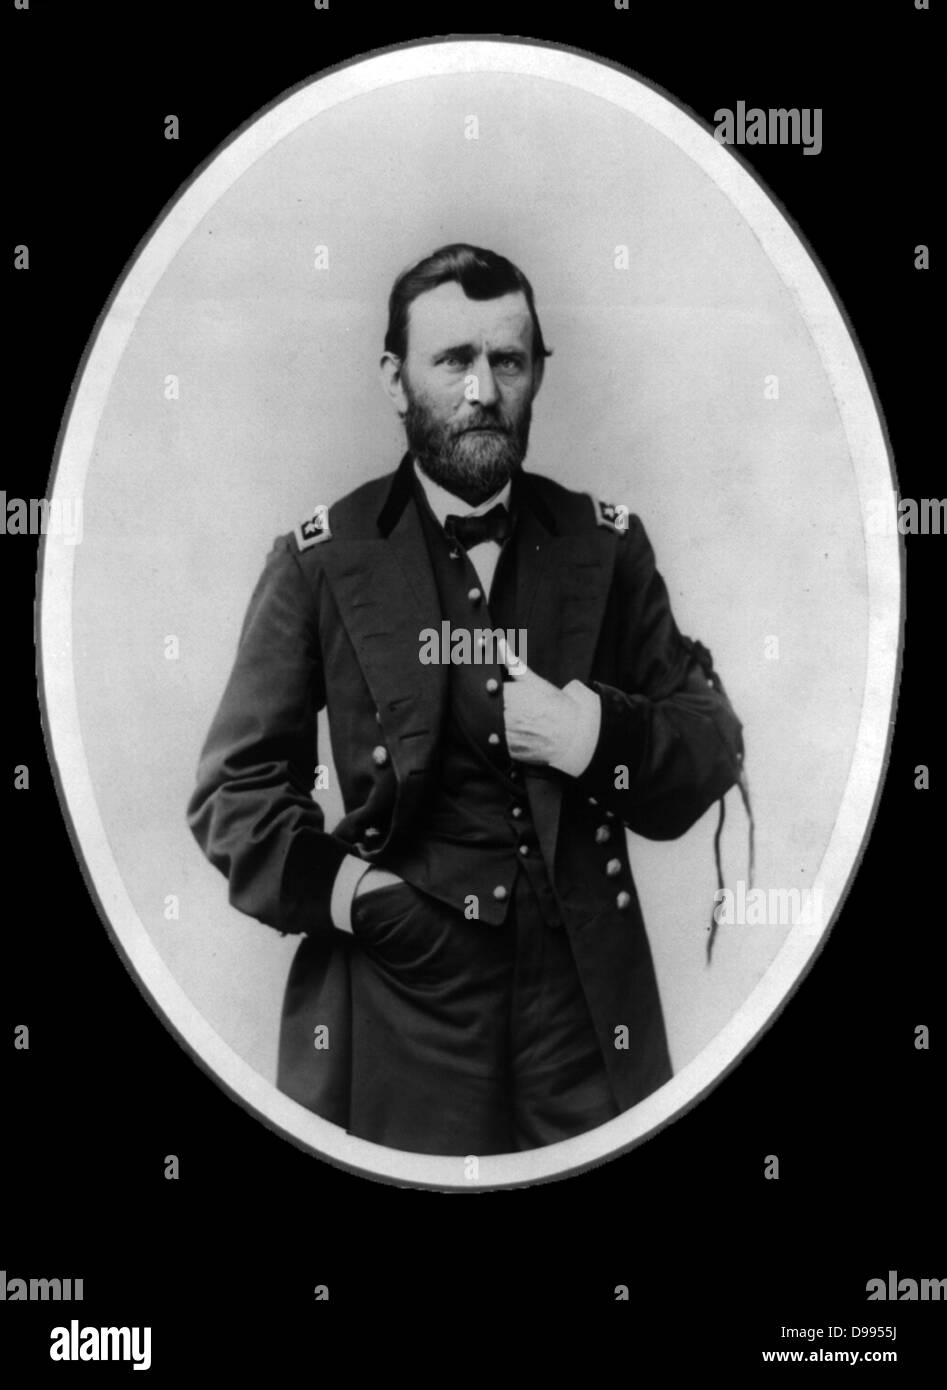 S Ulysses Grant (1822-1885), 18. Präsident der Vereinigten Staaten von Amerika, 1869-1877. Während des Amerikanischen Bürgerkriegs 1861-1865 war er General-in-Chief der Union Armeen. Hier in der Uniform der Generalleutnant. Drei Viertel portrait stehen. Stockfoto